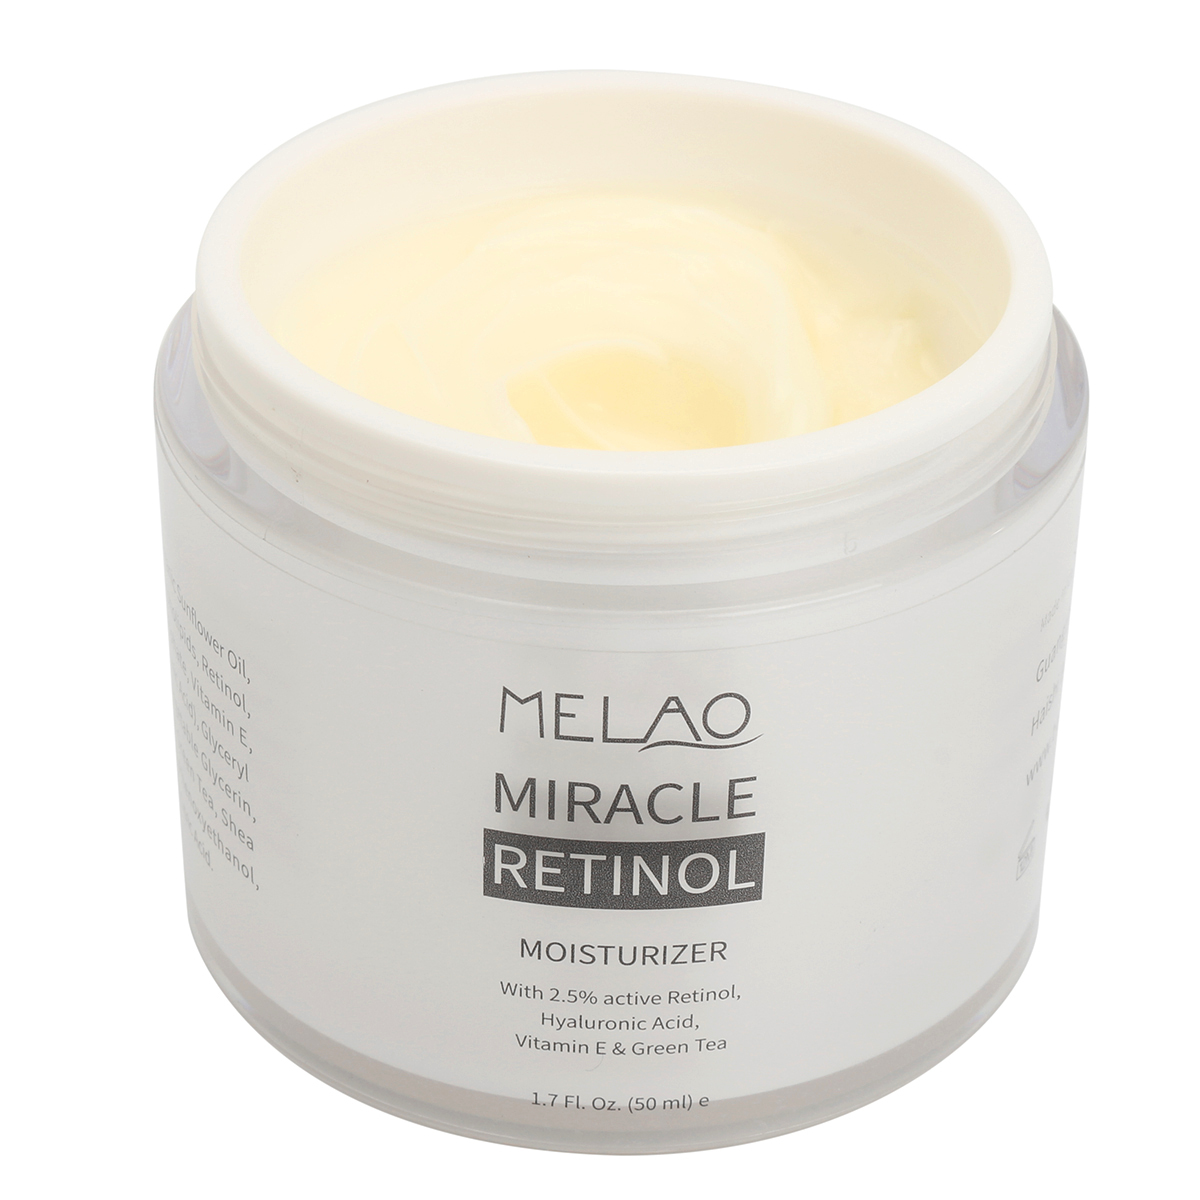 Melao Retinol Moisturizer Facial Cream Serum Vitamin E